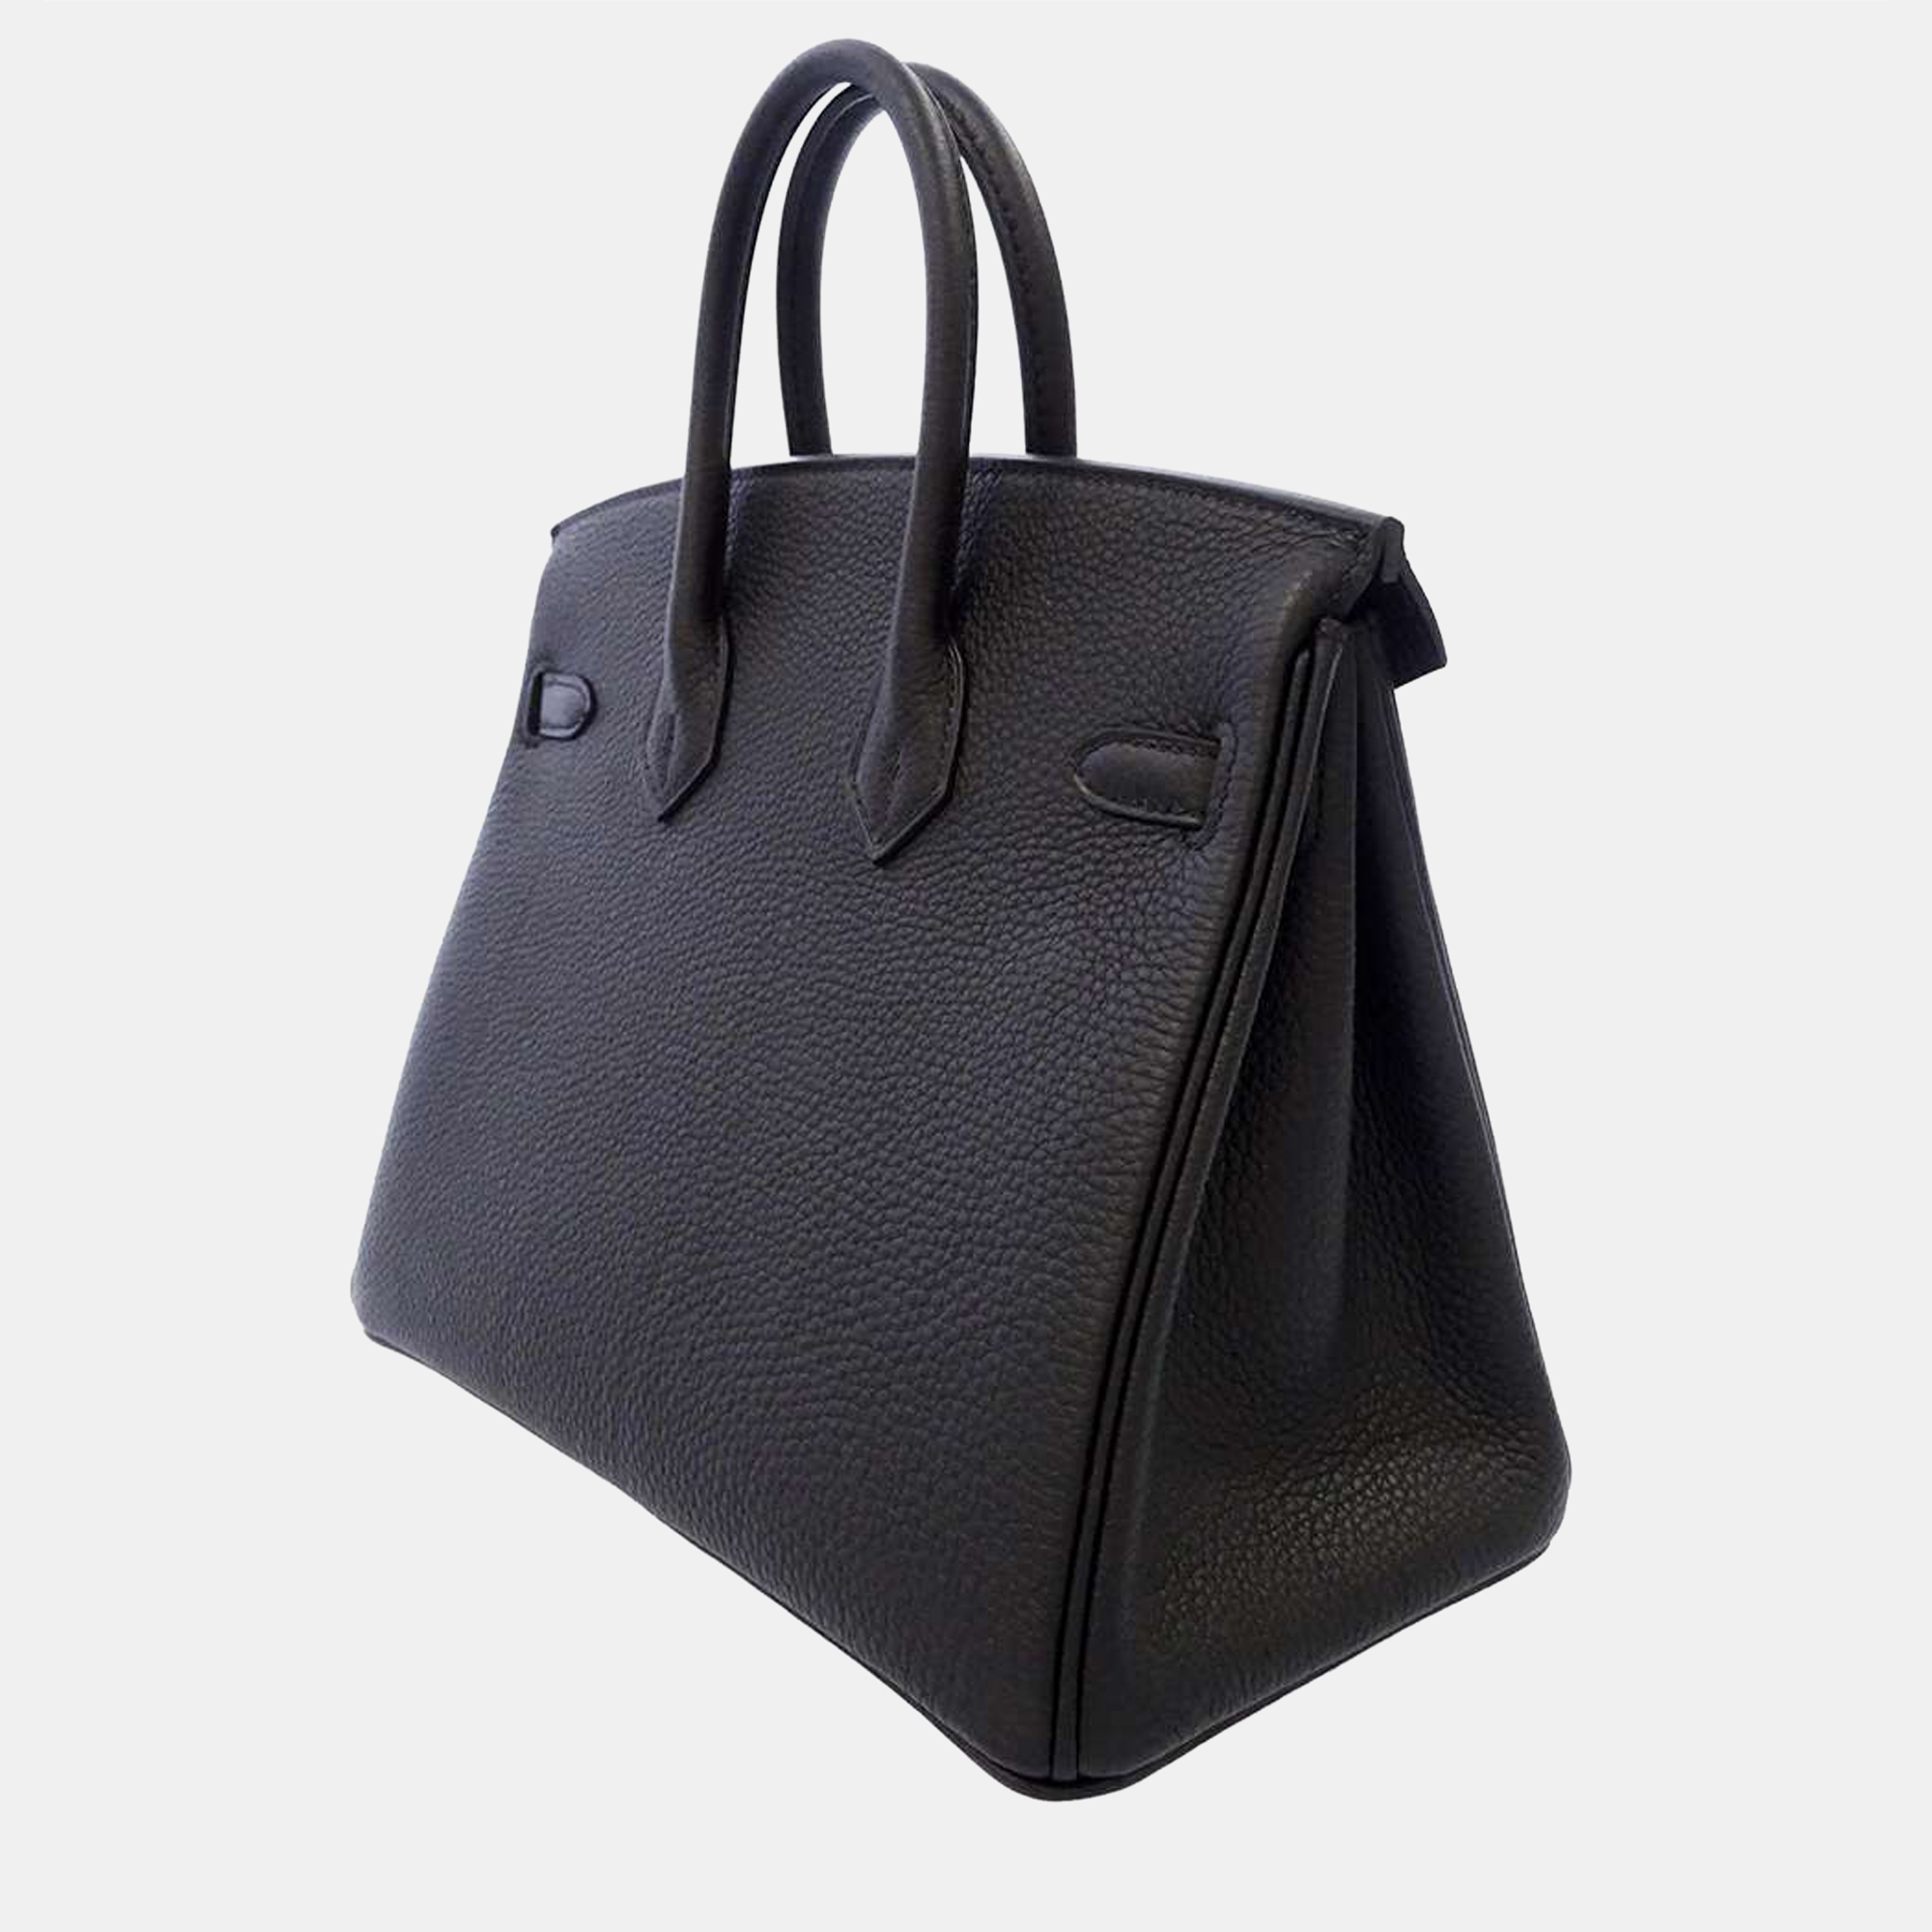 

Hermes Black Togo Leather Birkin 25 Bag